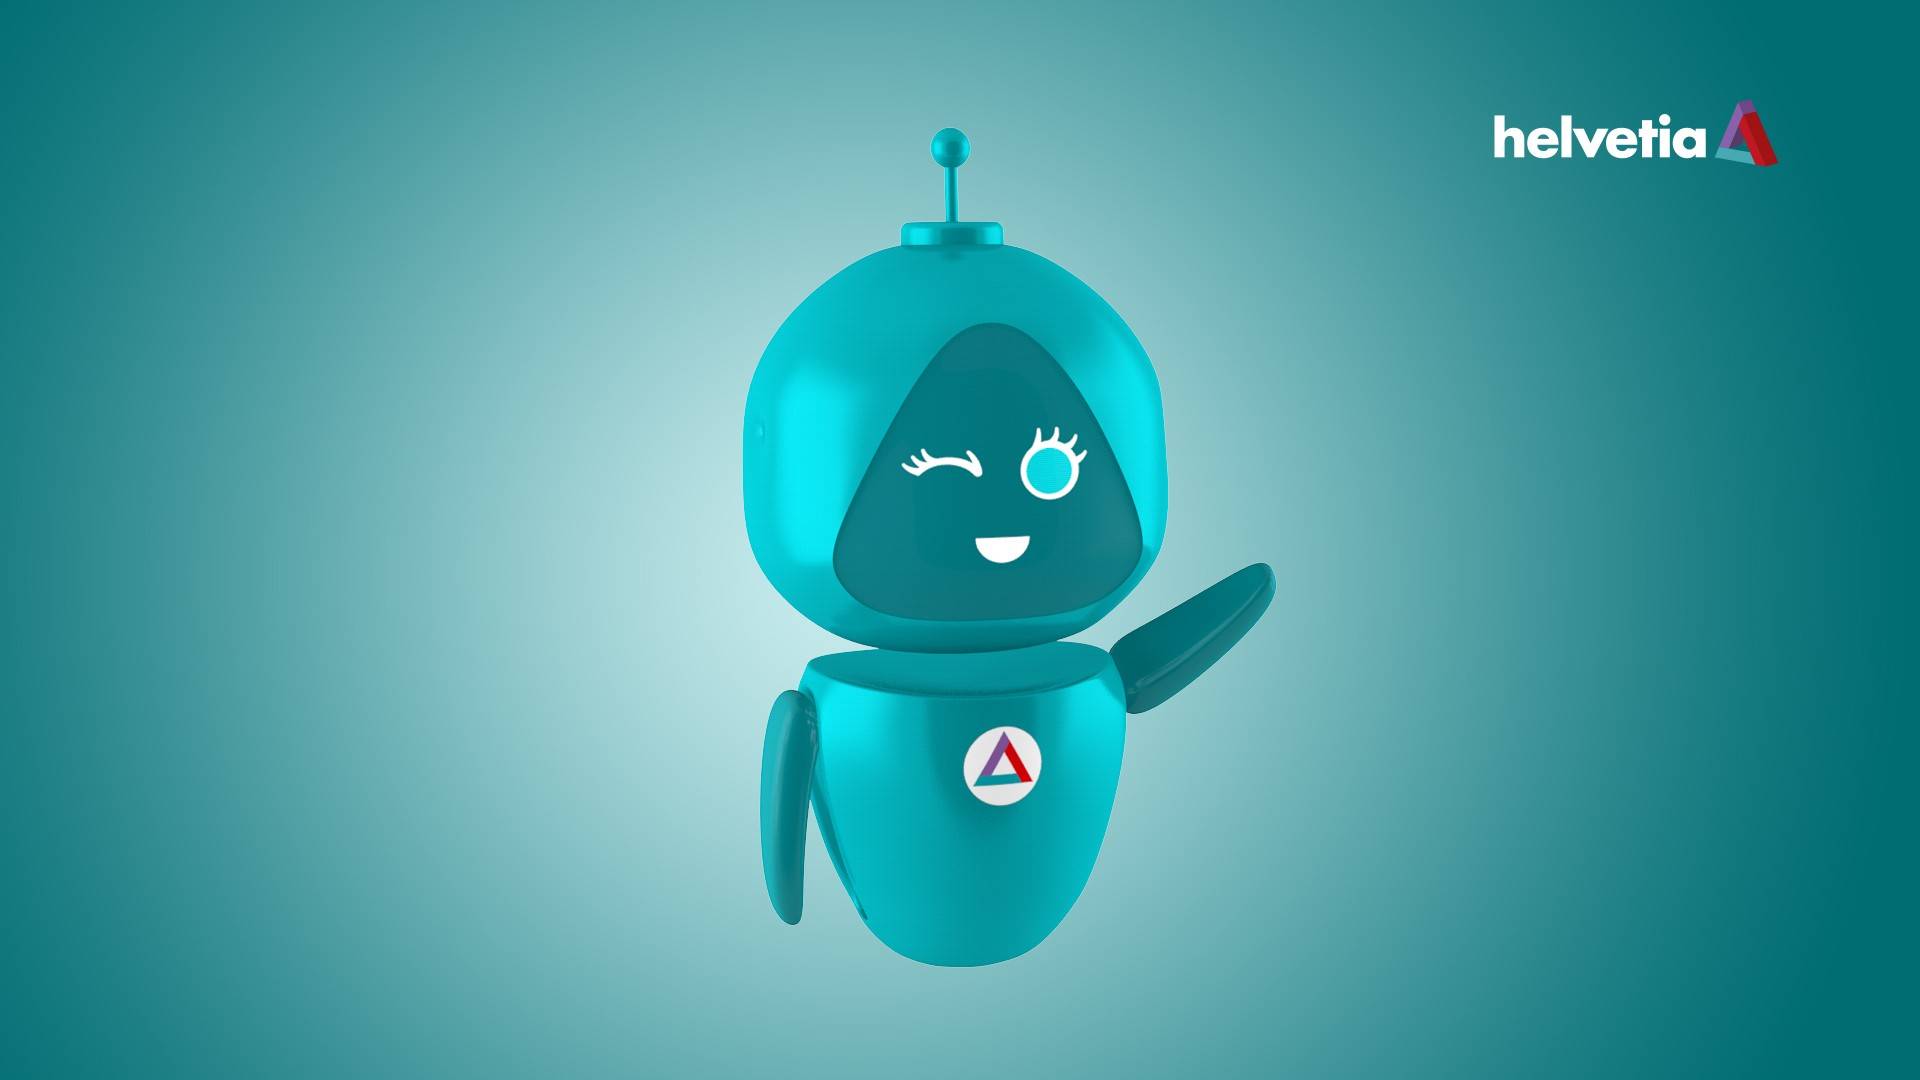 Abbildung der digitalen Versicherungsassistentin Clara, ein türkisfarbener Roboter, mit Sprechblase: "Velo weg? Ich helfe dir weiter!"